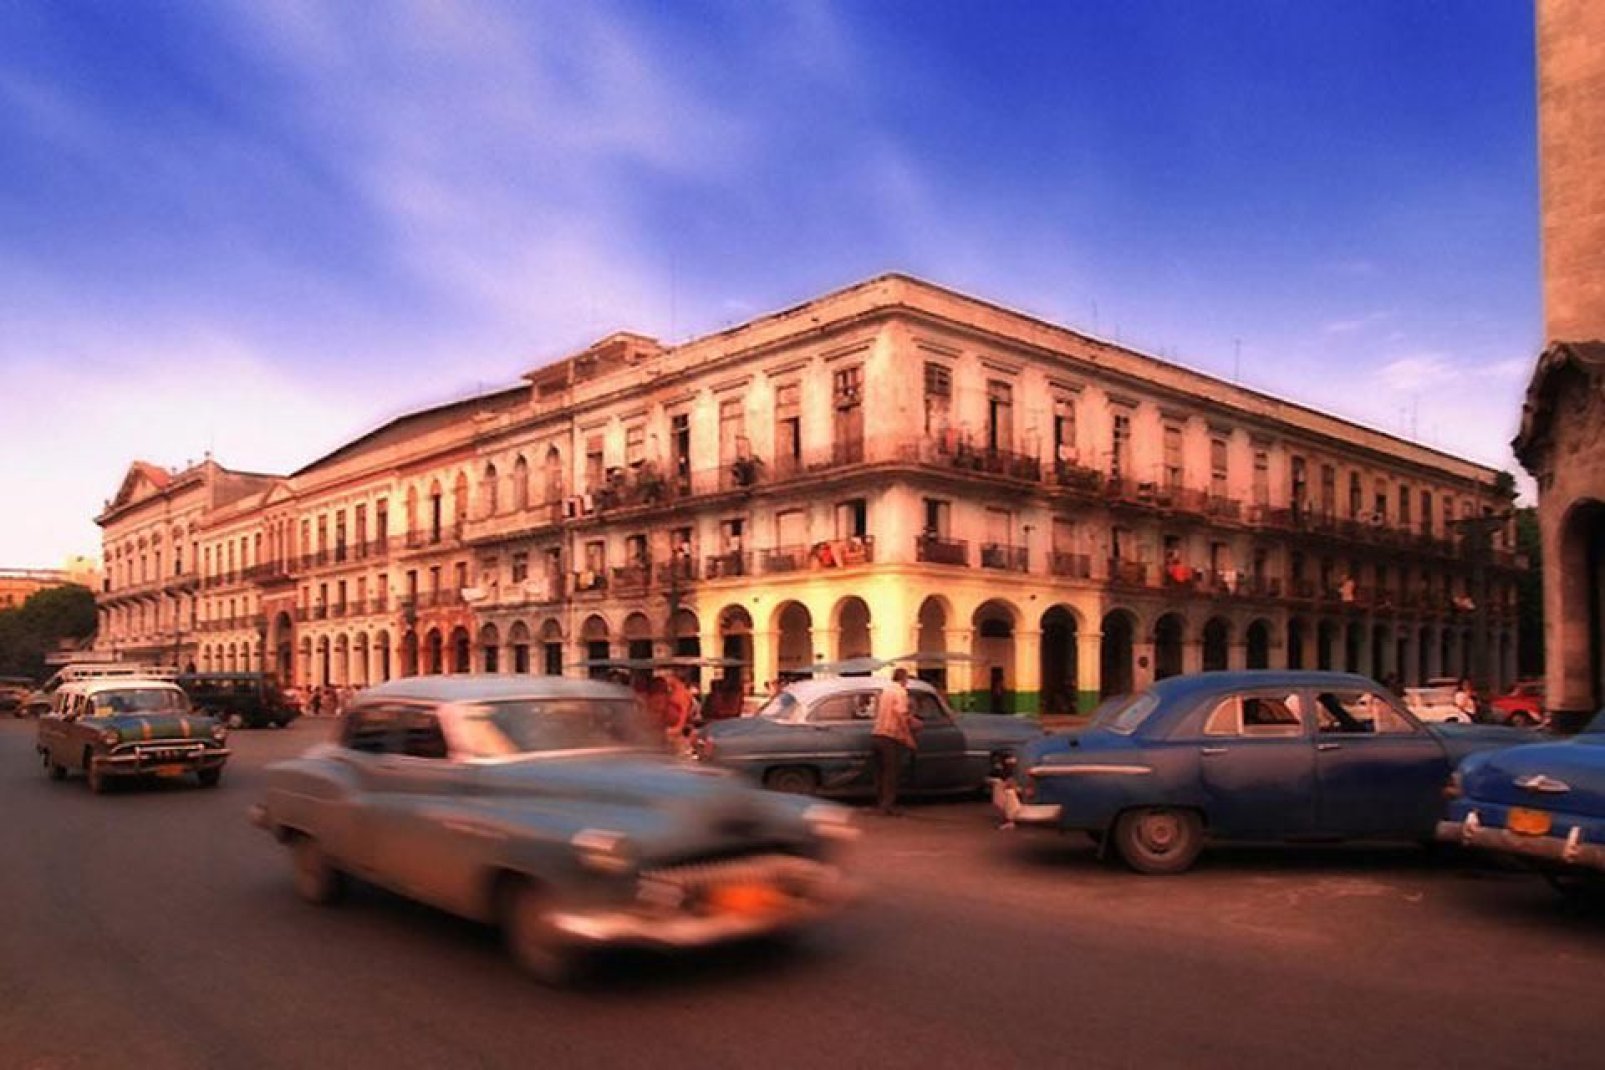 In den Straßen von Havanna mit den Gebäuden im Kolonialstil werden Sie zahlreiche alte Kraftfahrzeuge kreuzen.